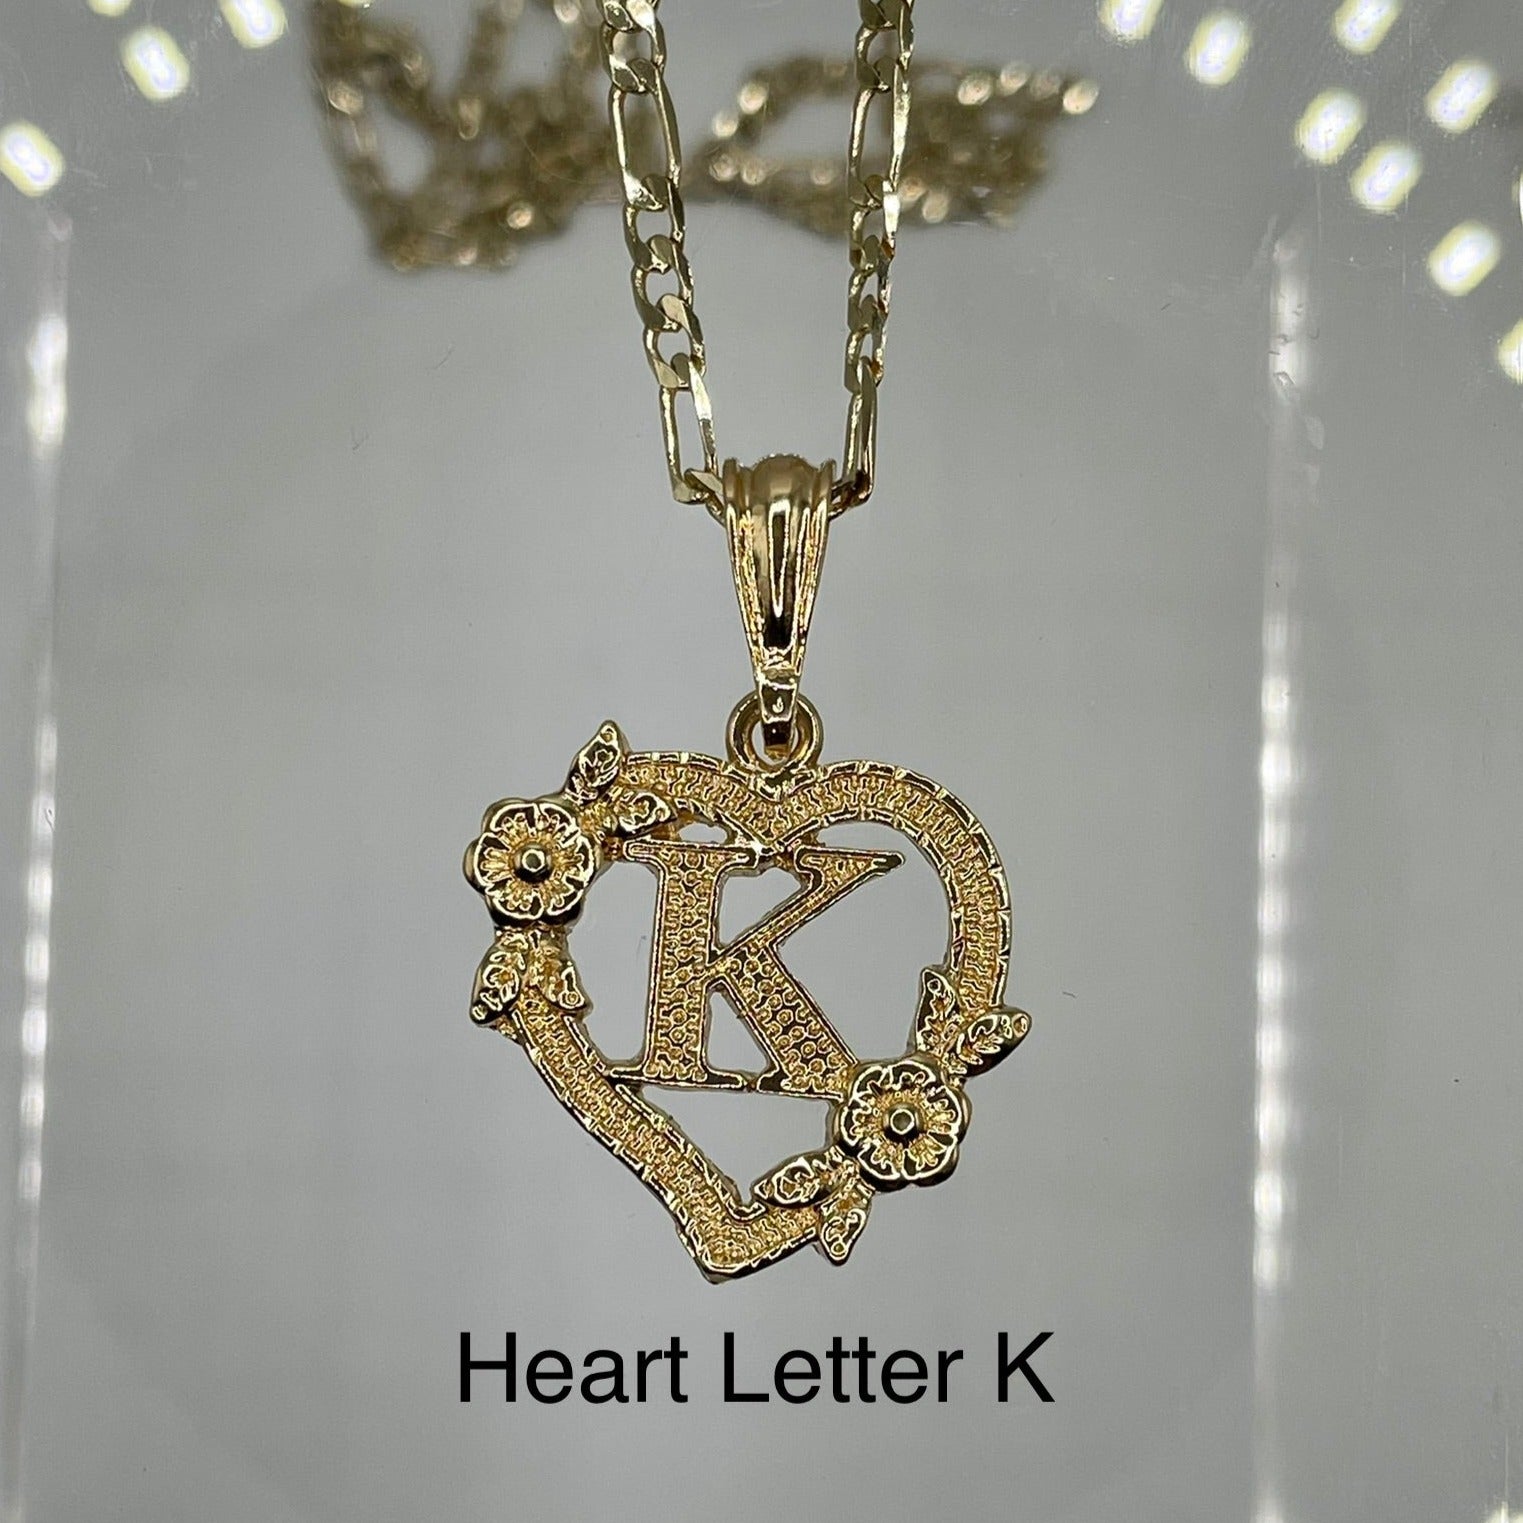 Heart letter K pendant. Gold heart pendant. Letter pendants.